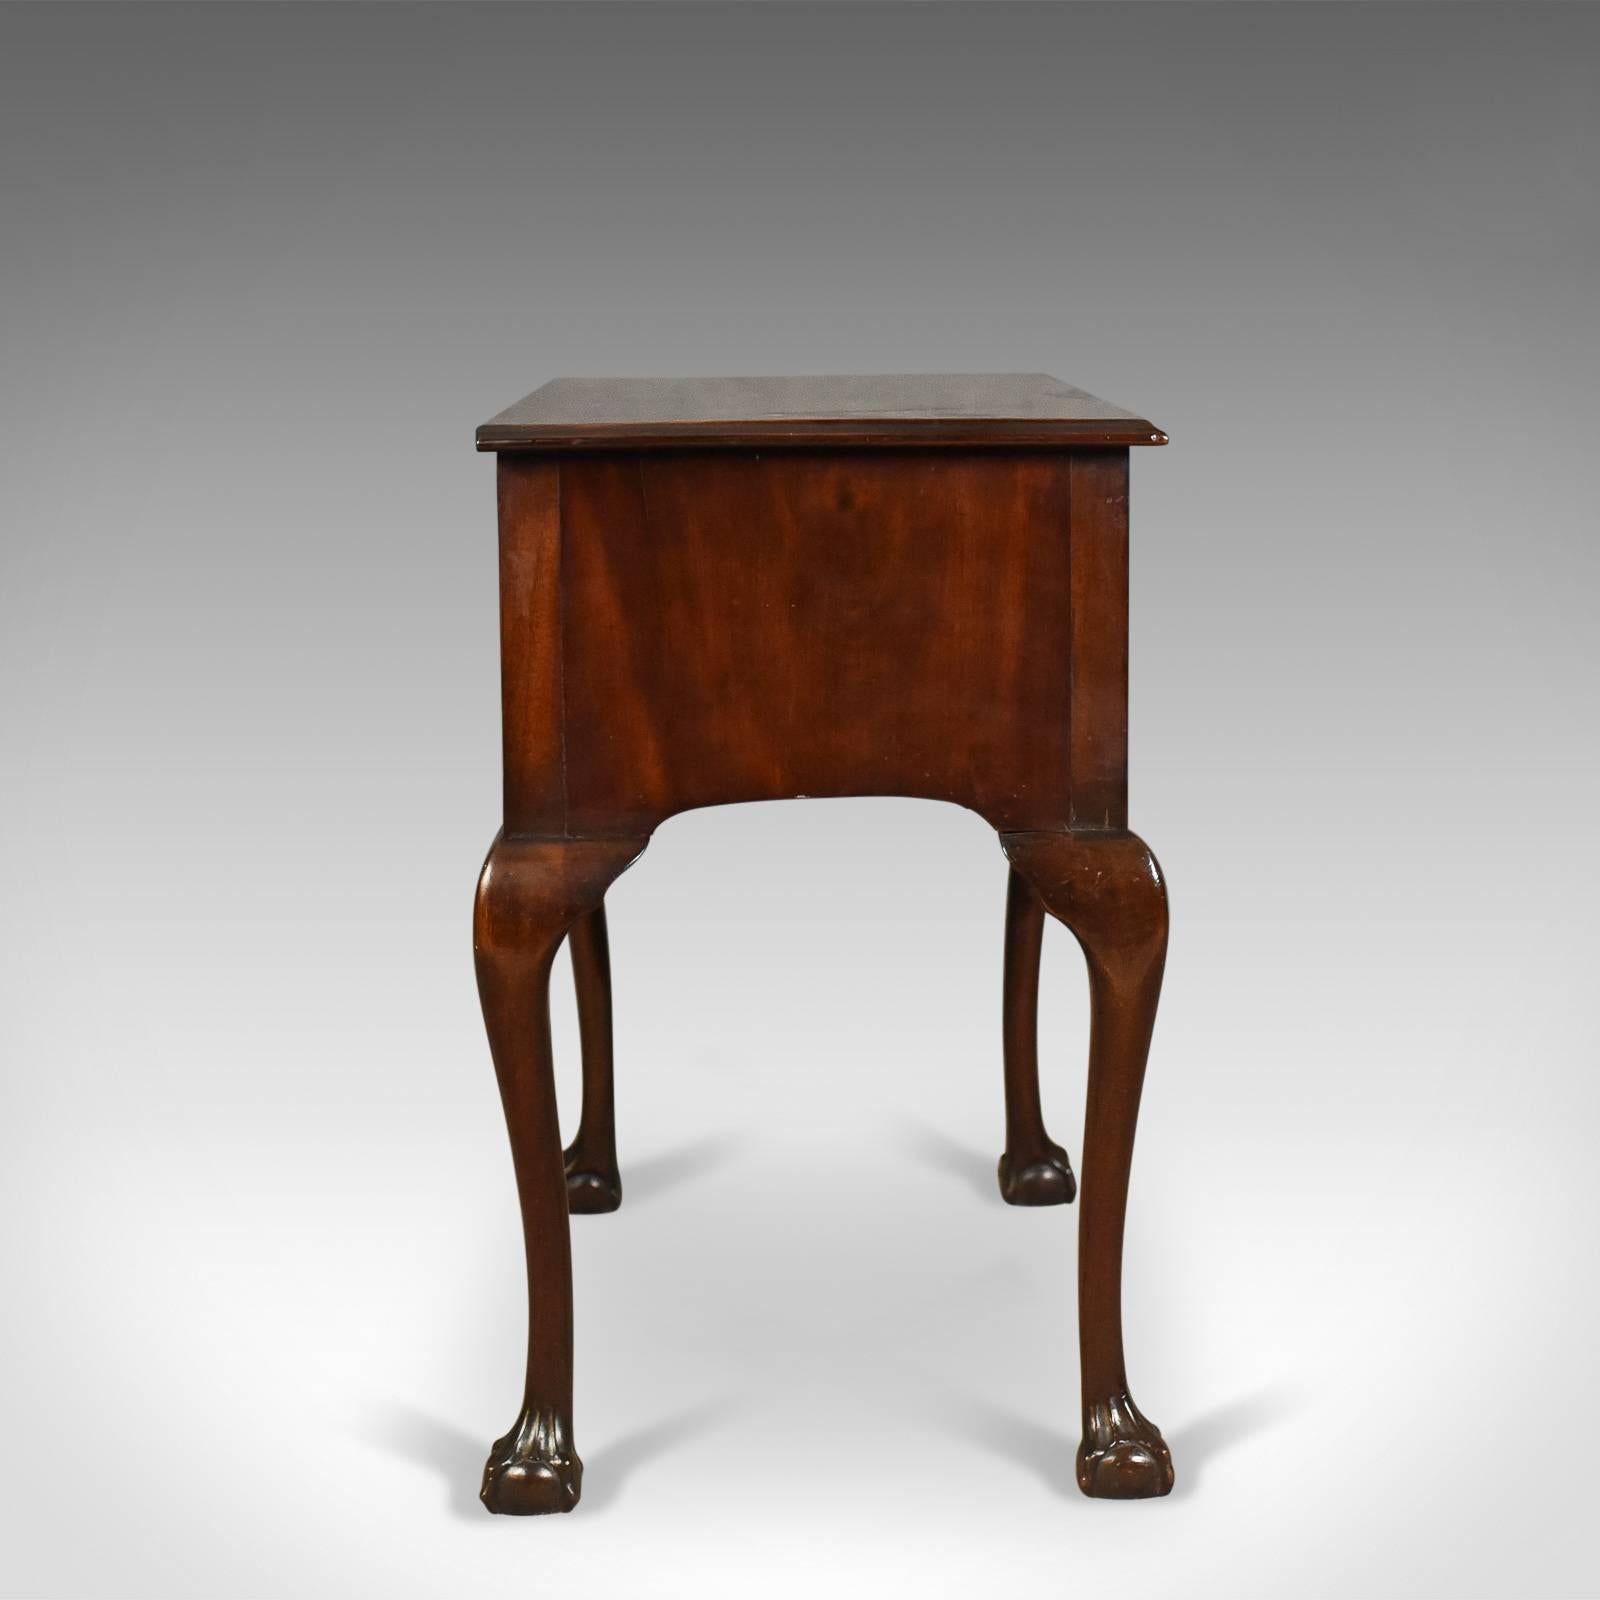 Antiker englischer niedriger spätviktorianischer Mahagoni-Tisch, um 1900 (Viktorianisch)